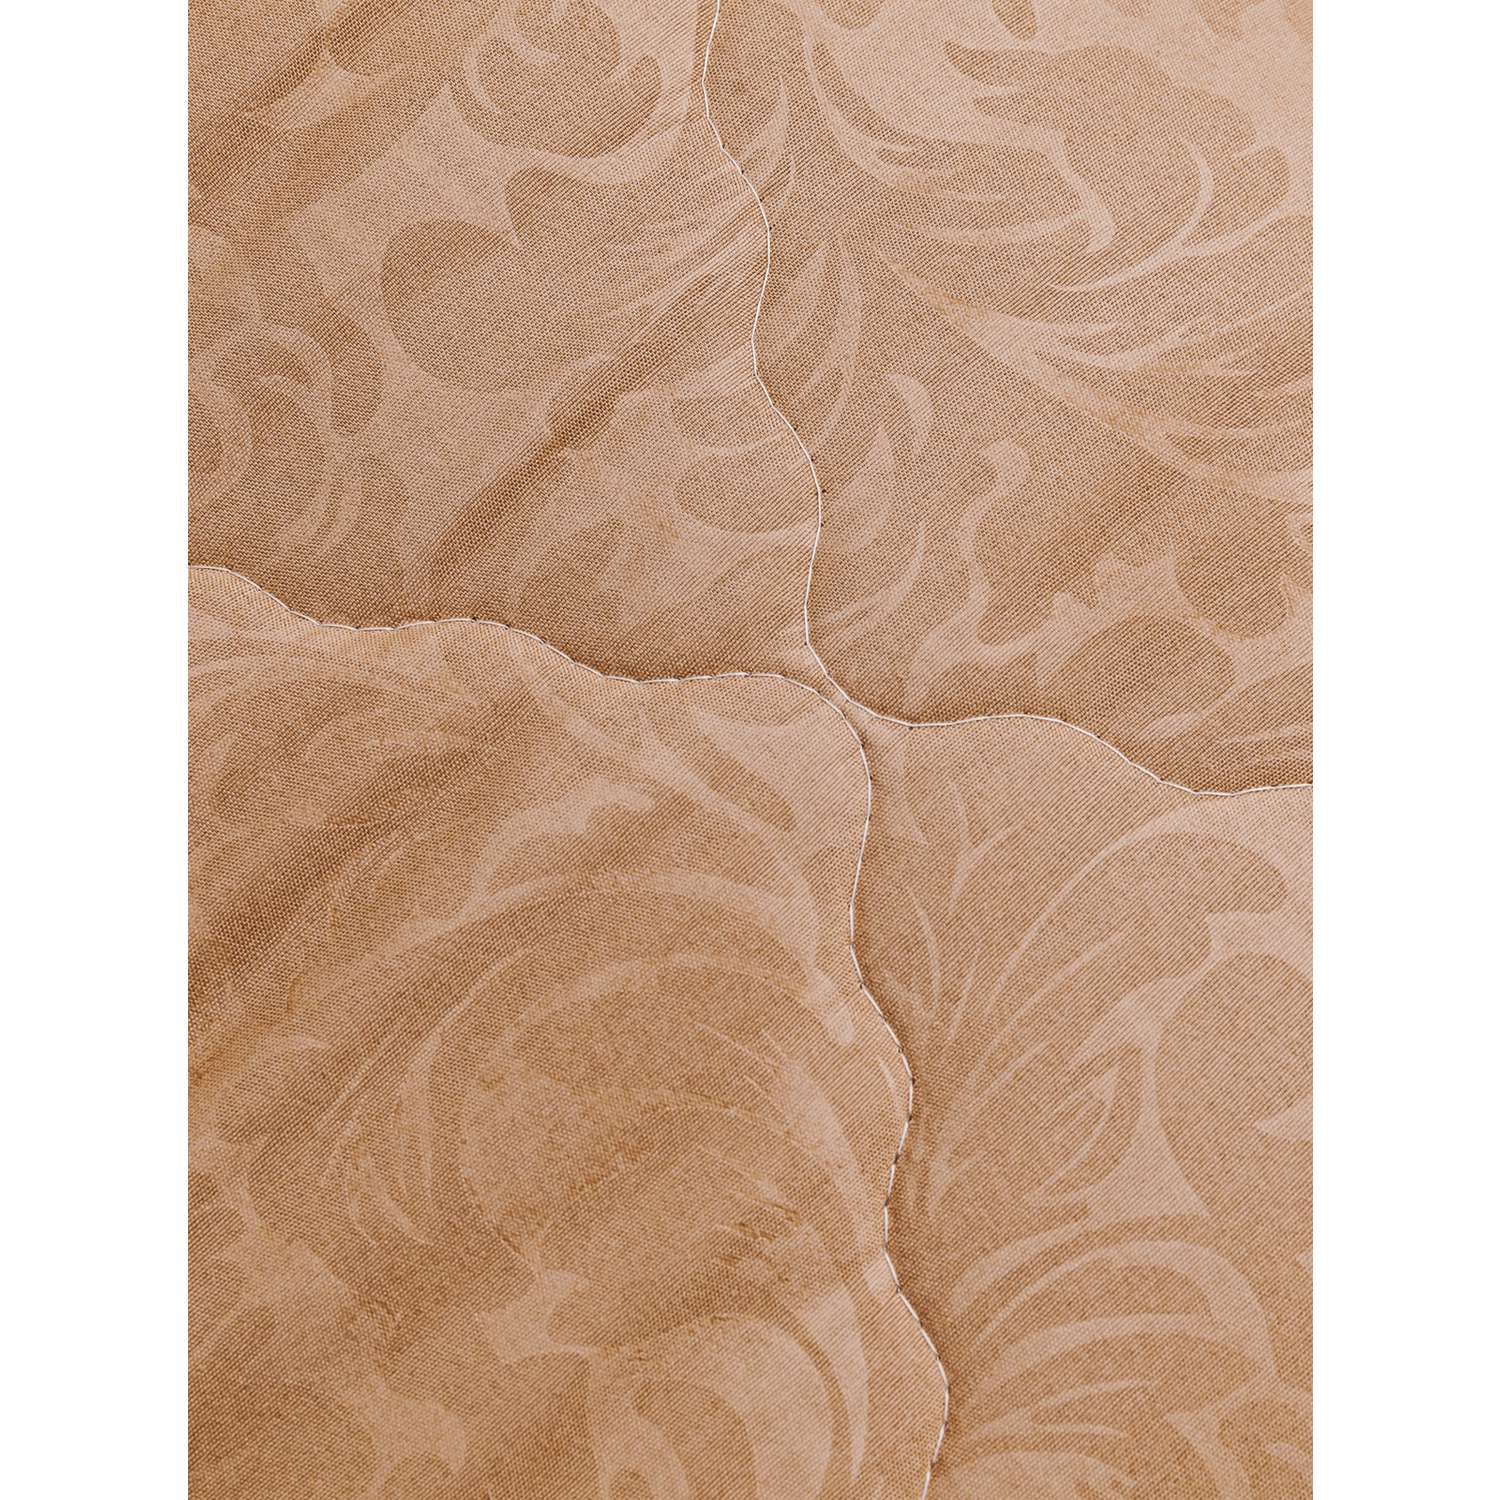 Одеяло 2 спальное Vesta Микрофибра облегченное - фото 6